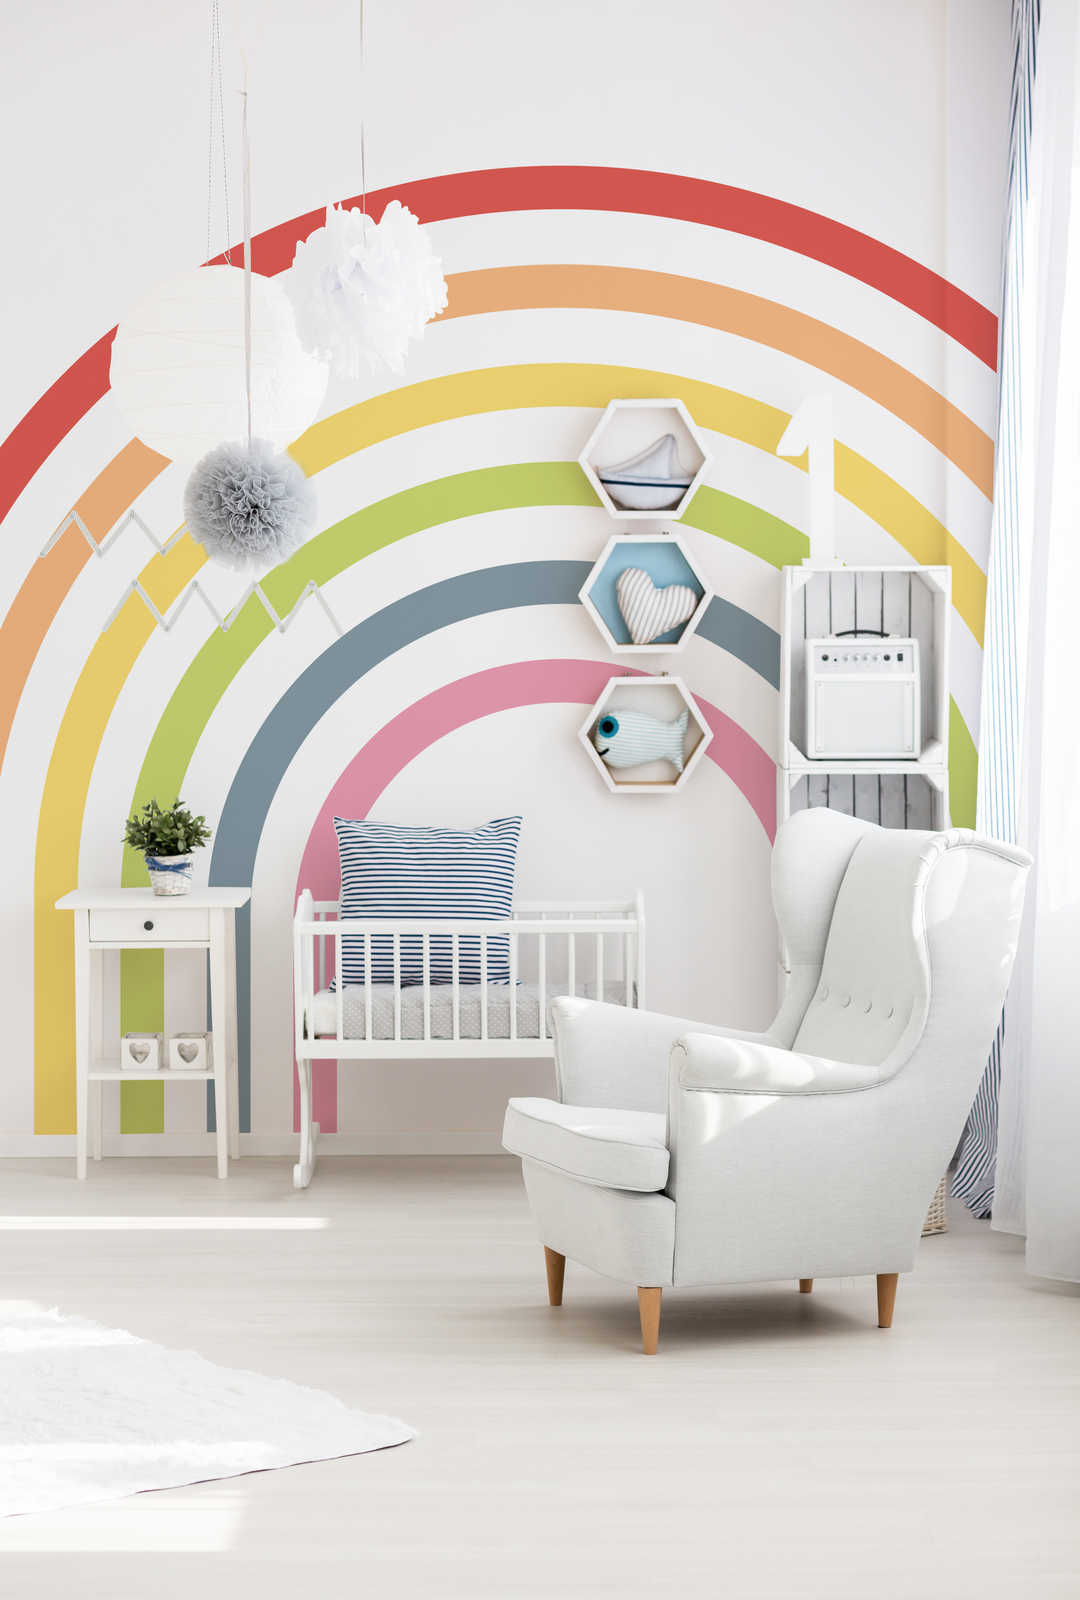 Kinderkamer regenboog muurschildering in heldere kleuren
